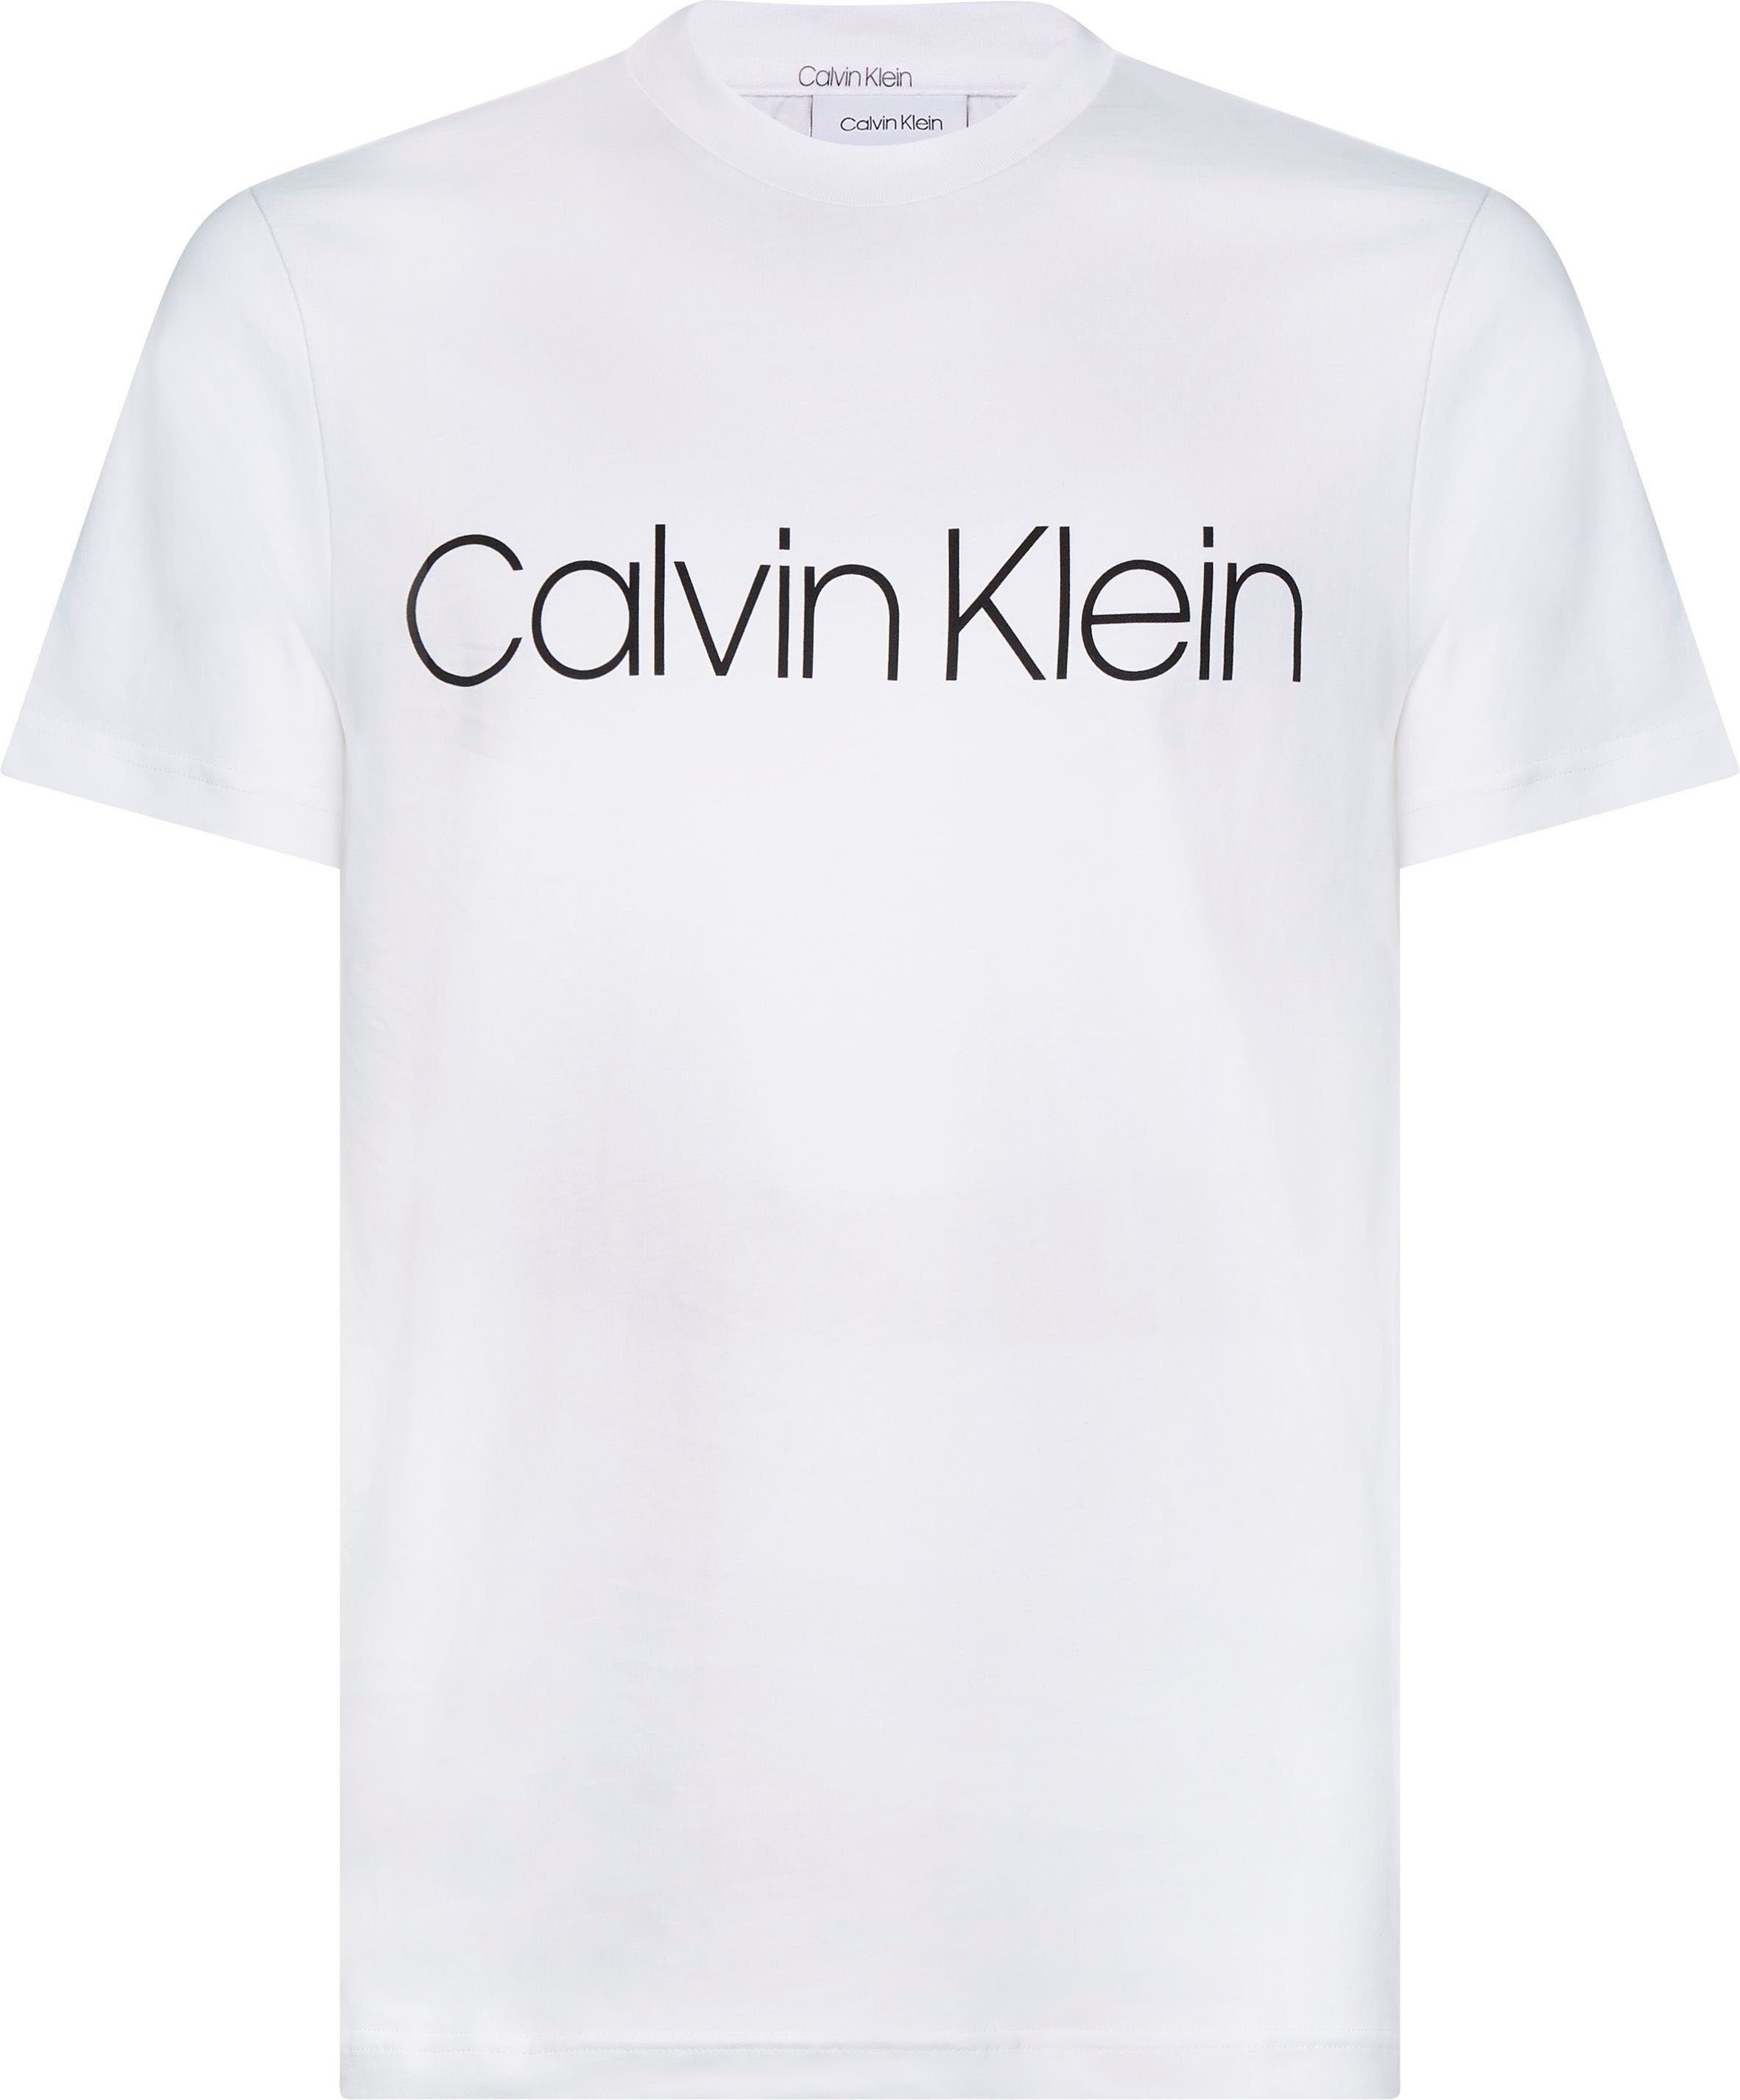 Calvin Logoschriftzug Big&Tall BT-COTTON weiß LOGO T-SHIRT FRONT Klein T-Shirt mit